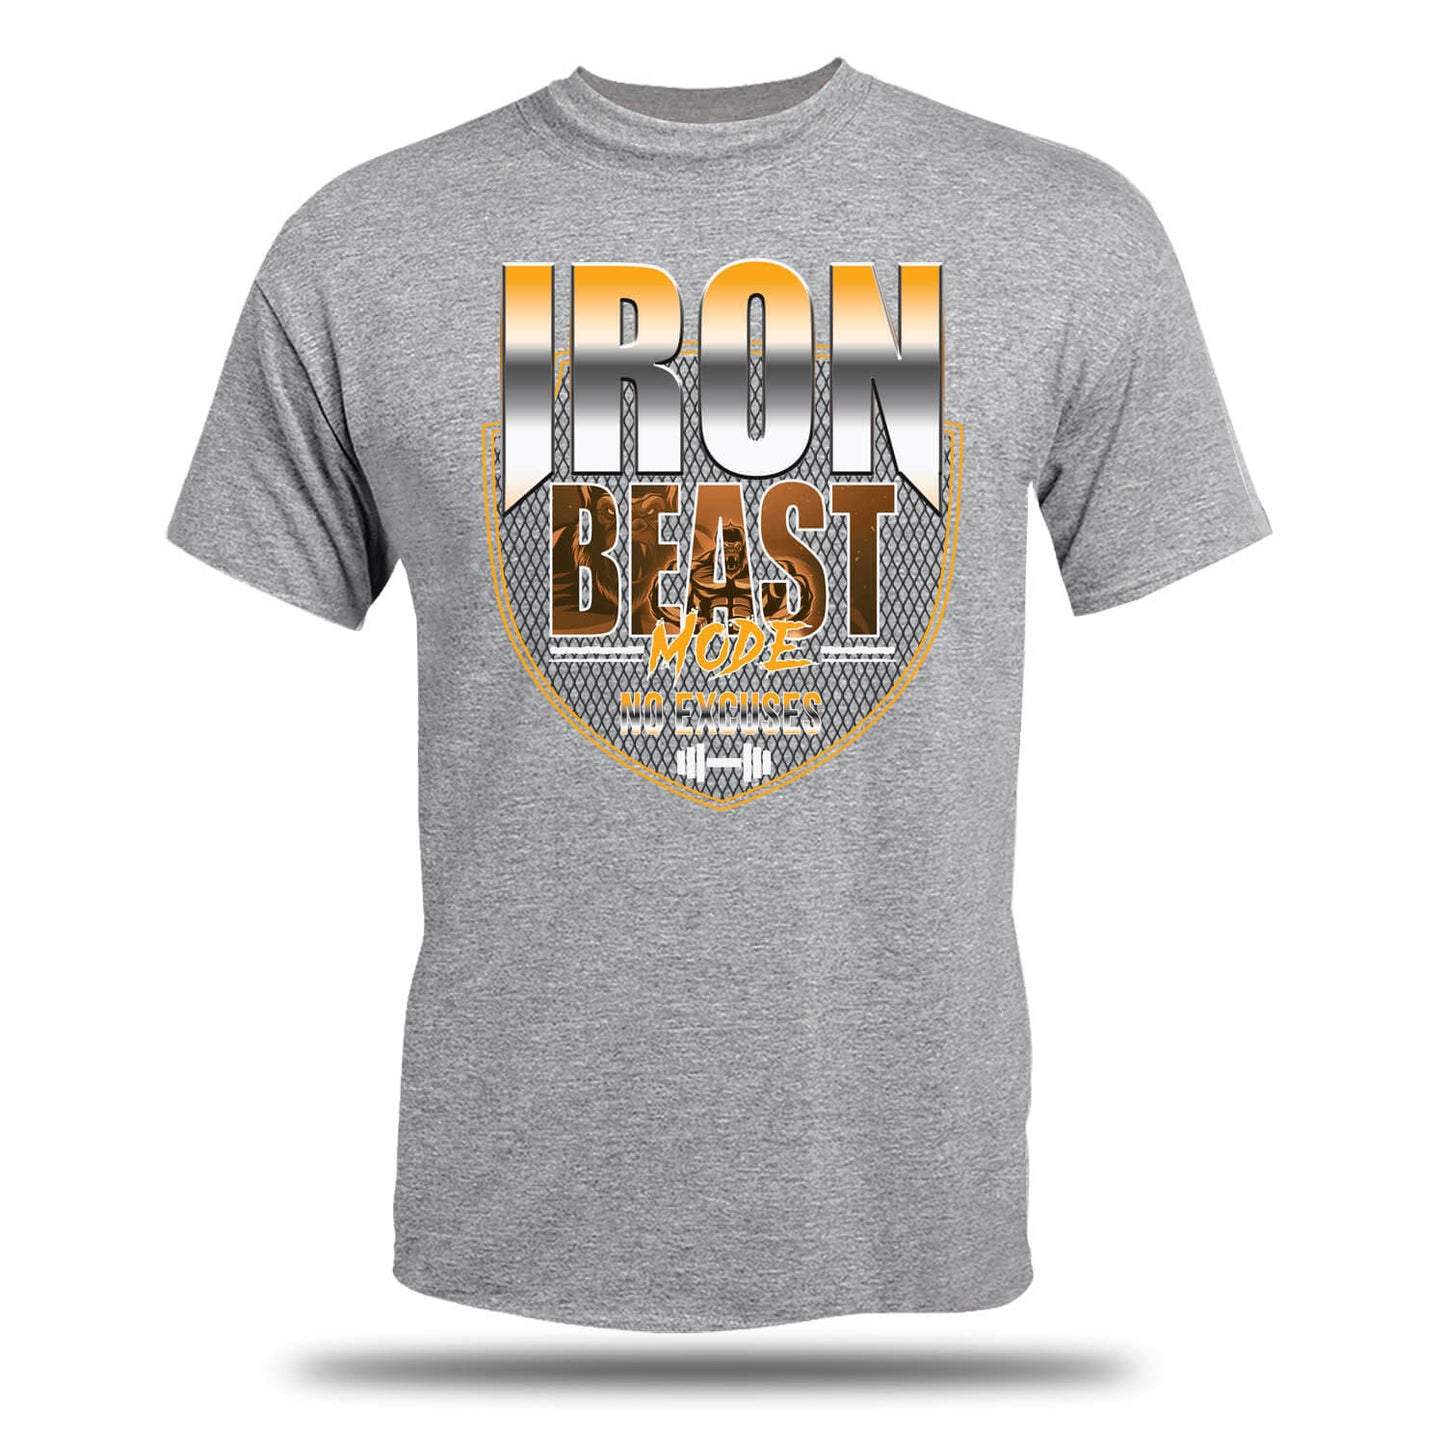 Iron Beast-Modus: Keine Ausreden